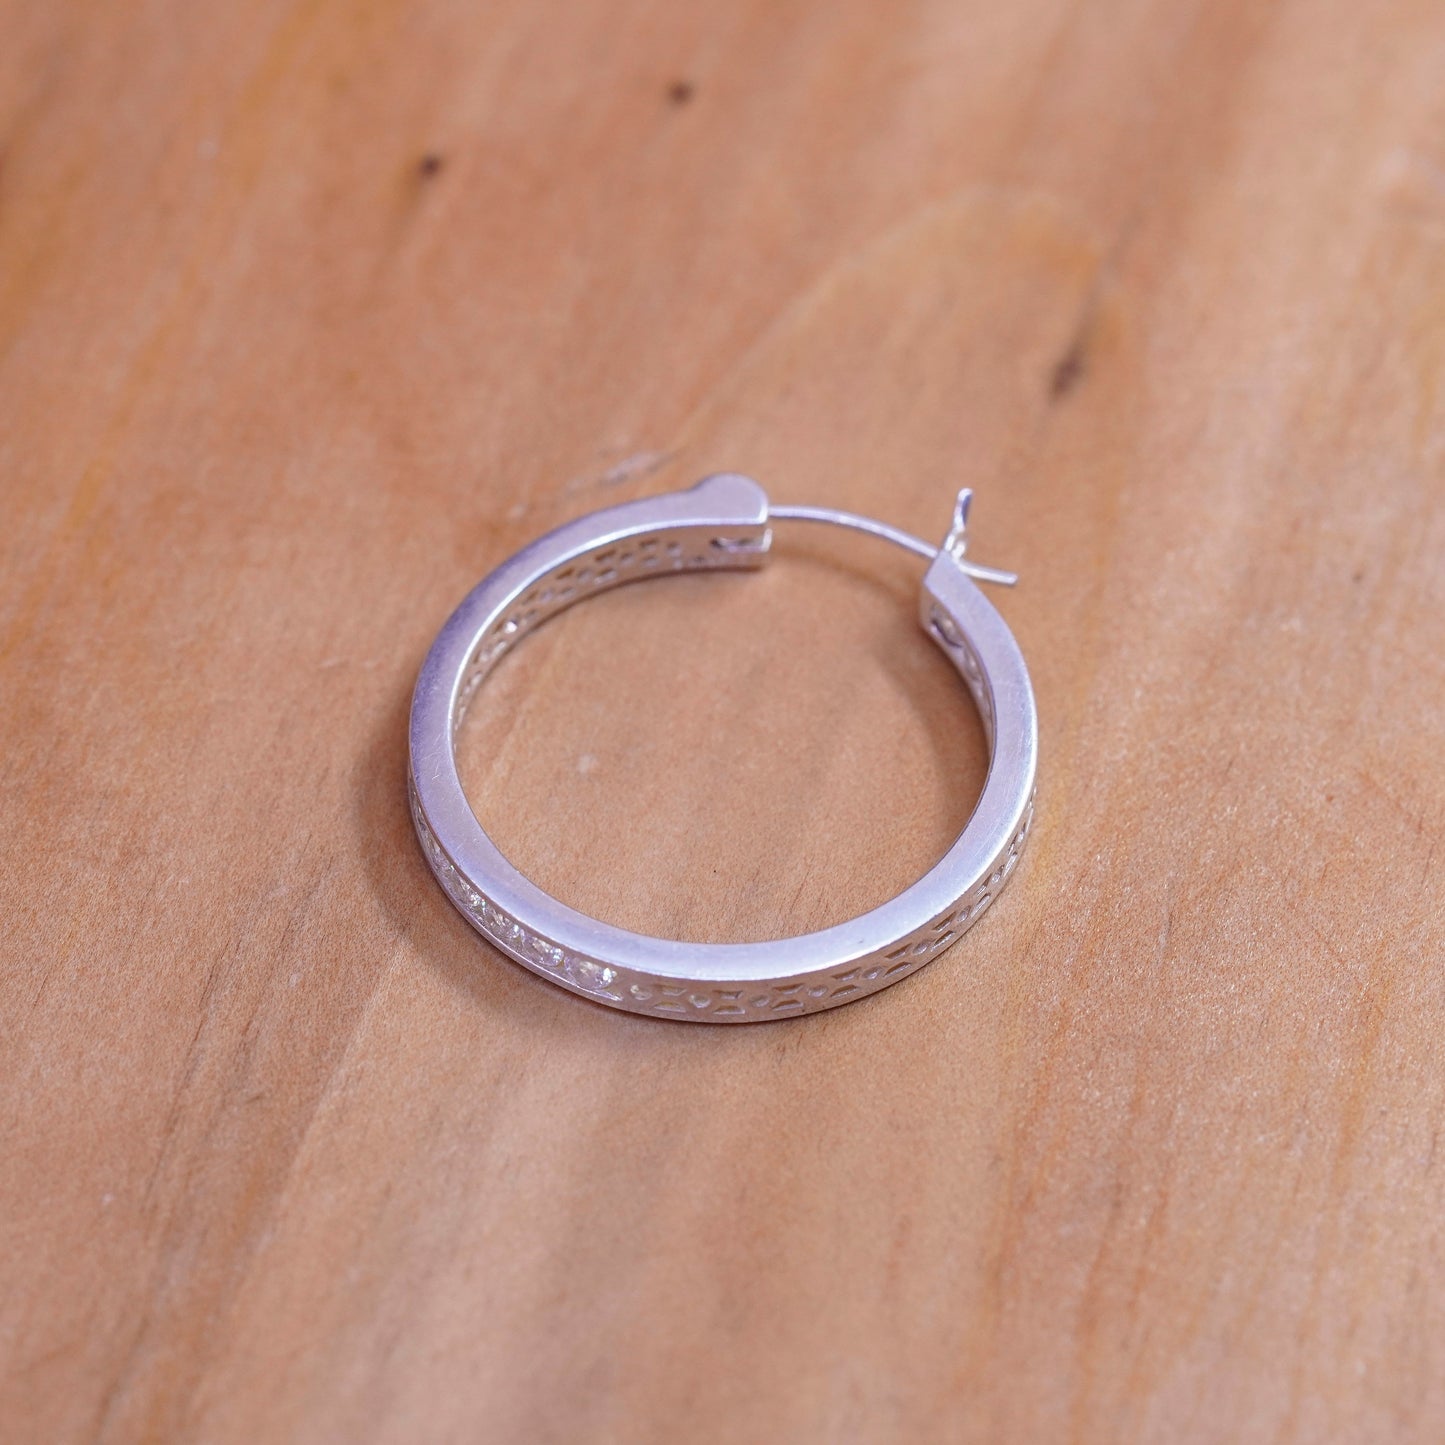 1”, vintage Sterling silver handmade earrings, 925 hoops with cluster crystal